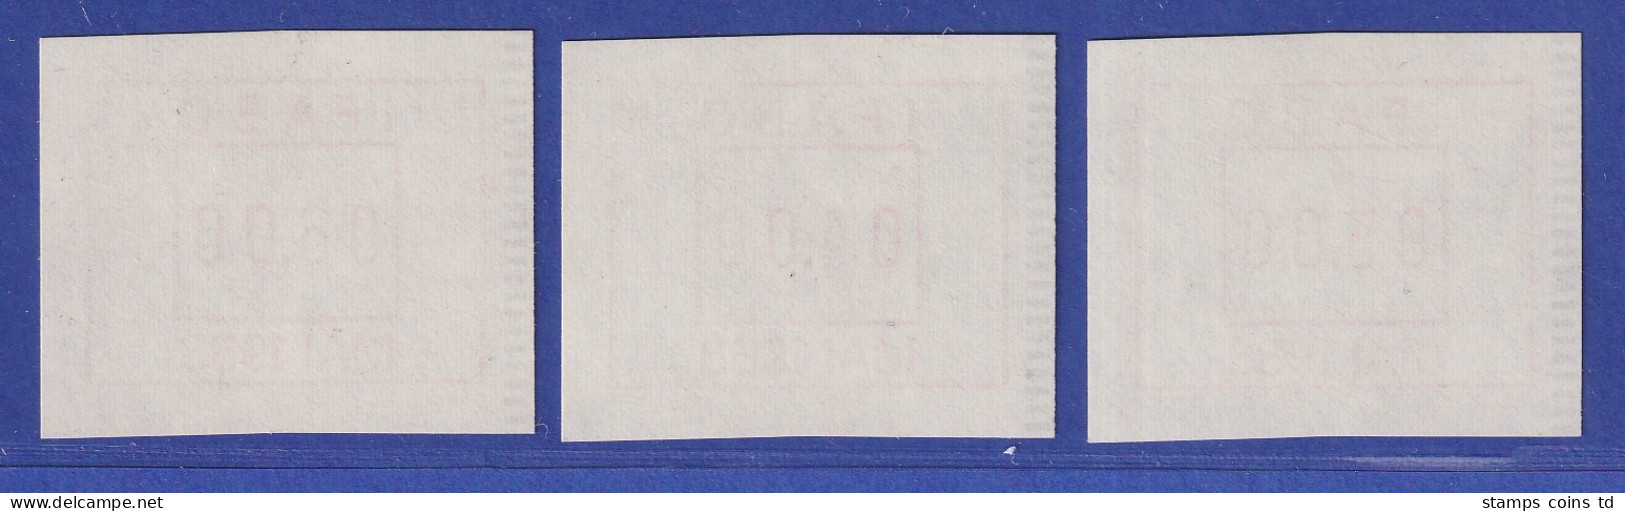 Österreich FRAMA-ATM Vorführdruck IFABO MAI 1983 Als Satz !!! 3.00-4.00-6.00 **  - Machine Labels [ATM]